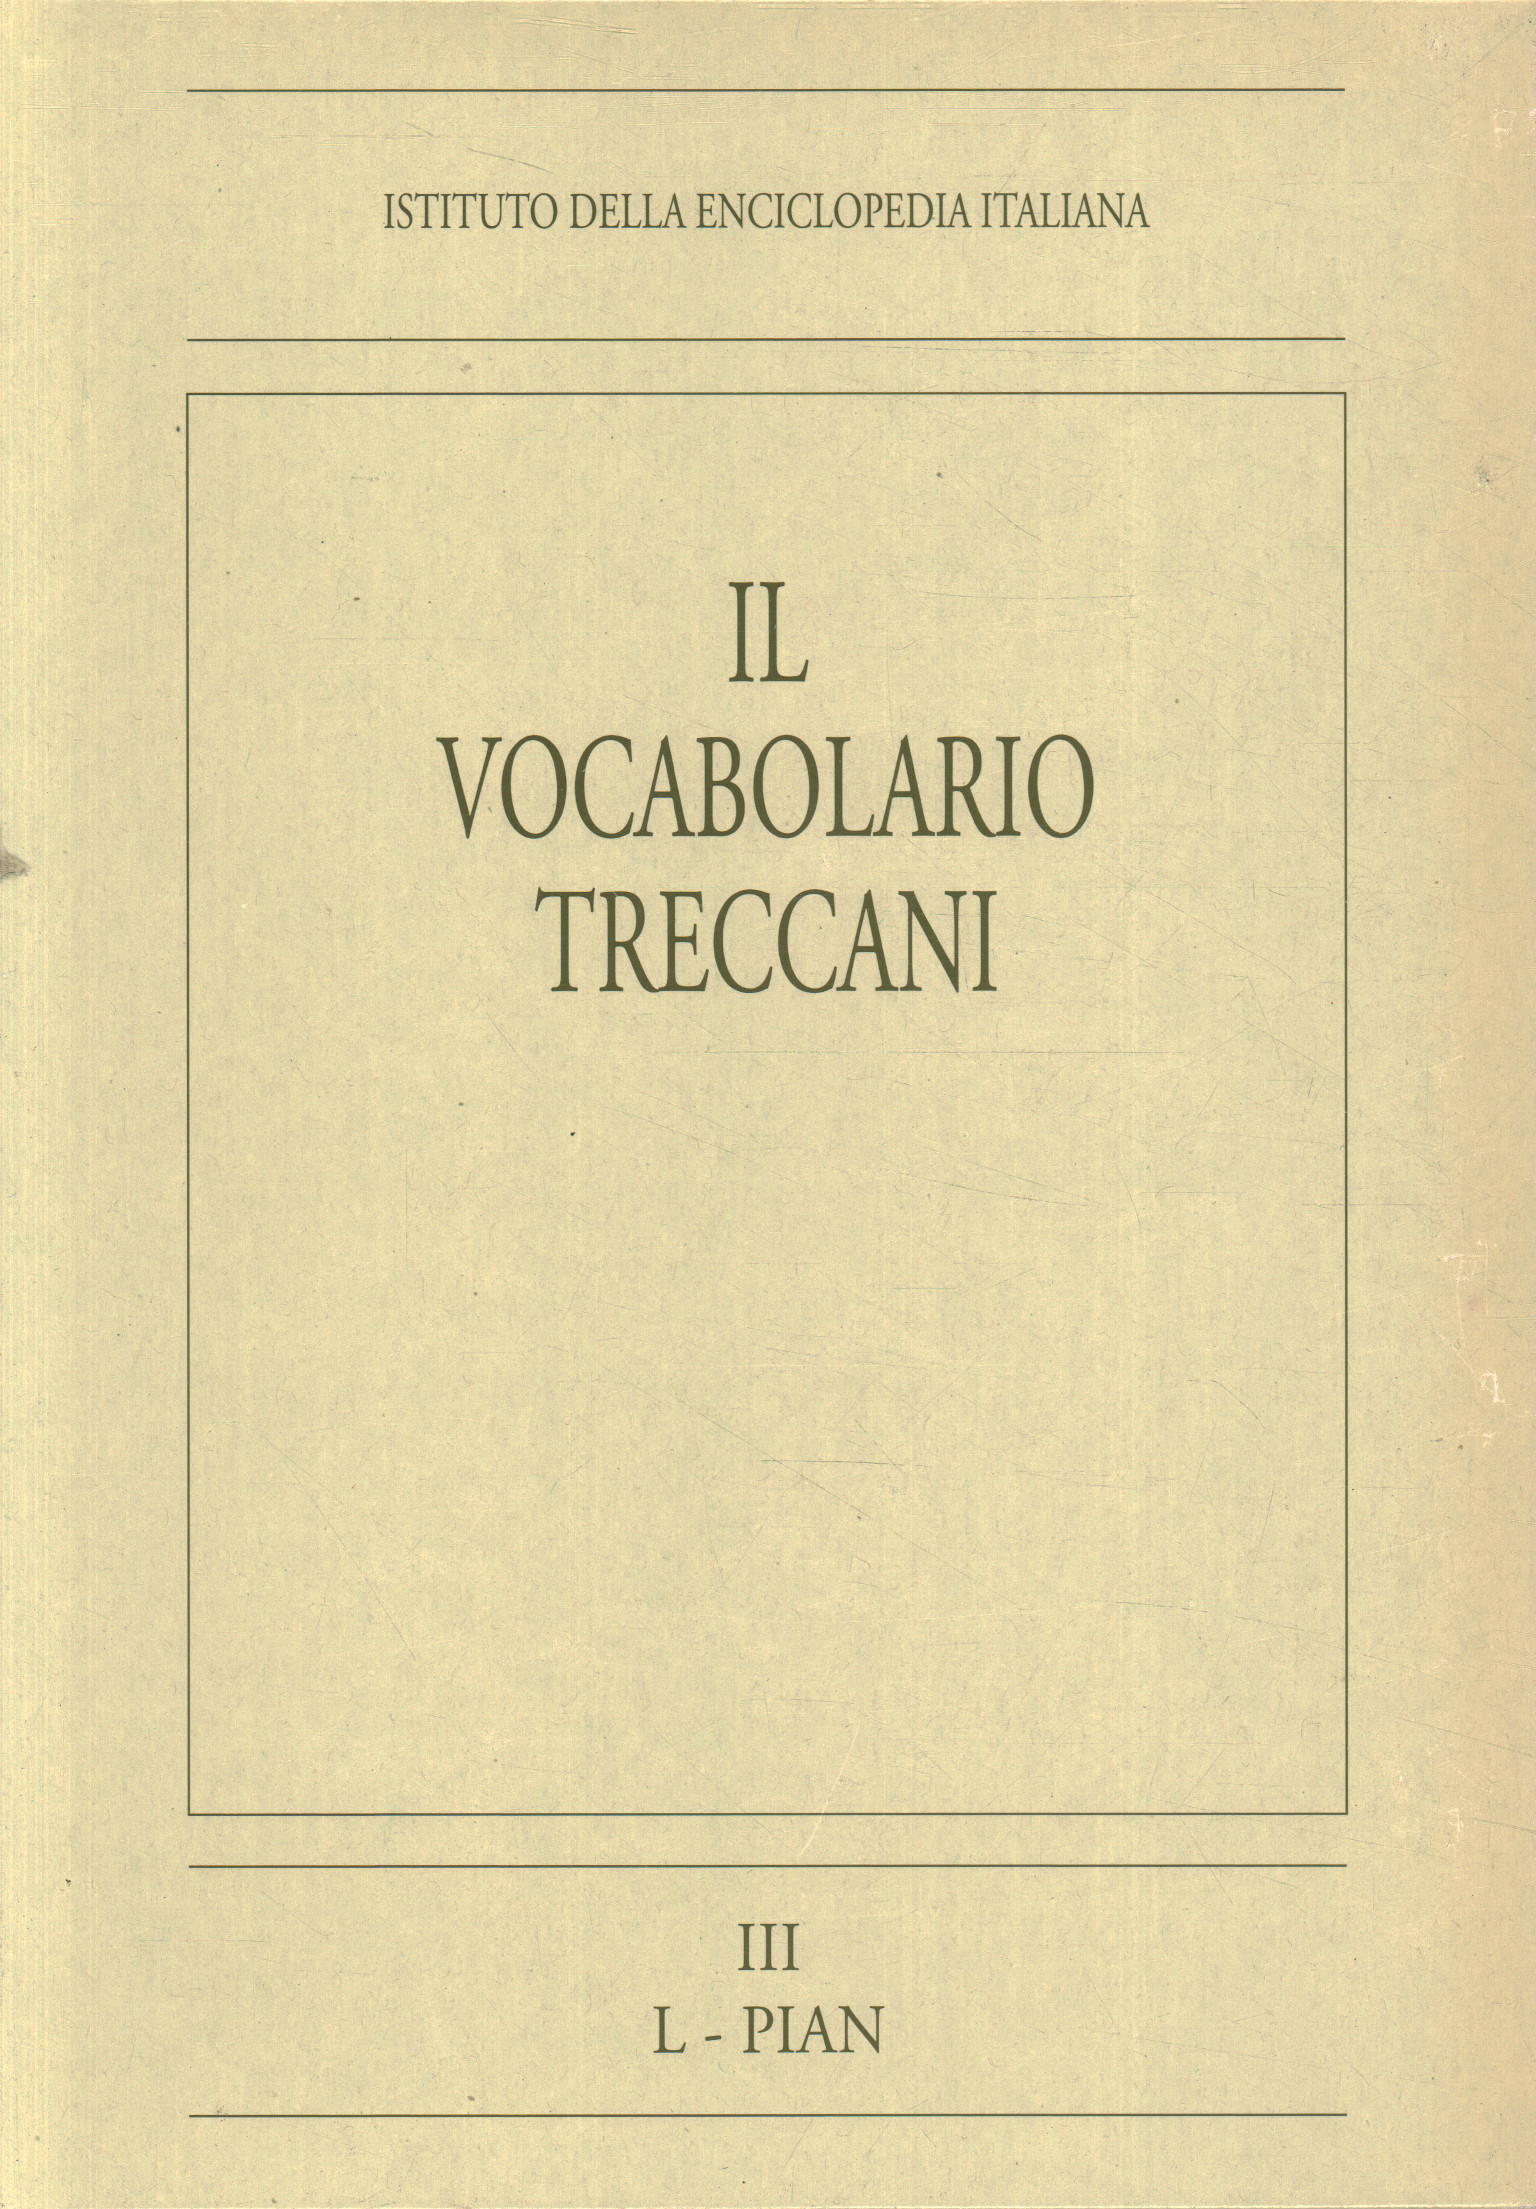 The Treccani vocabulary. L-PIAN (Volume